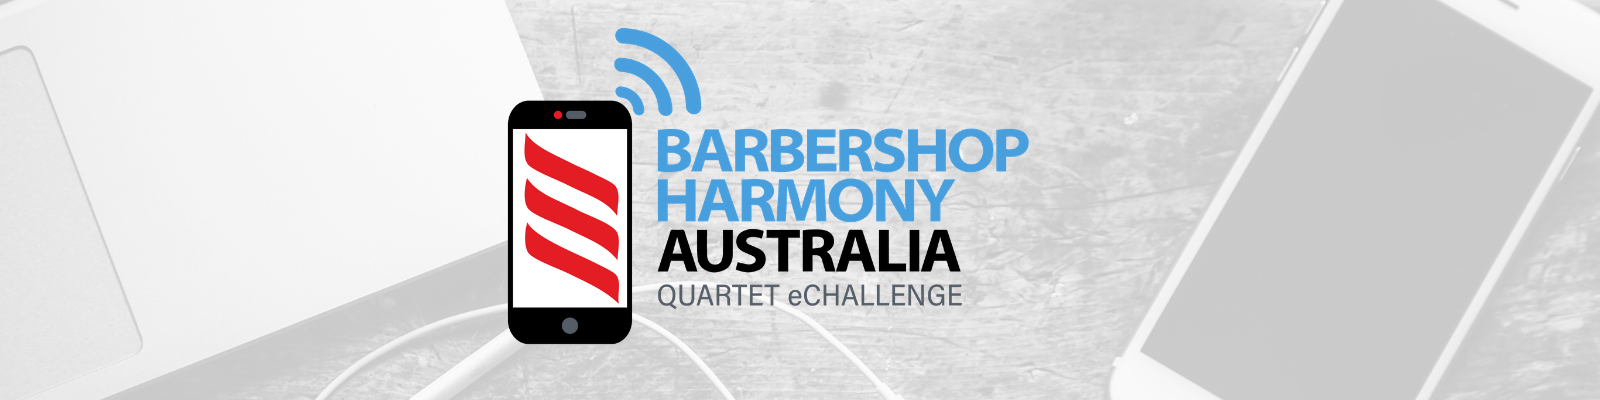 Barbershop Harmony Australia Quartet eChallenge